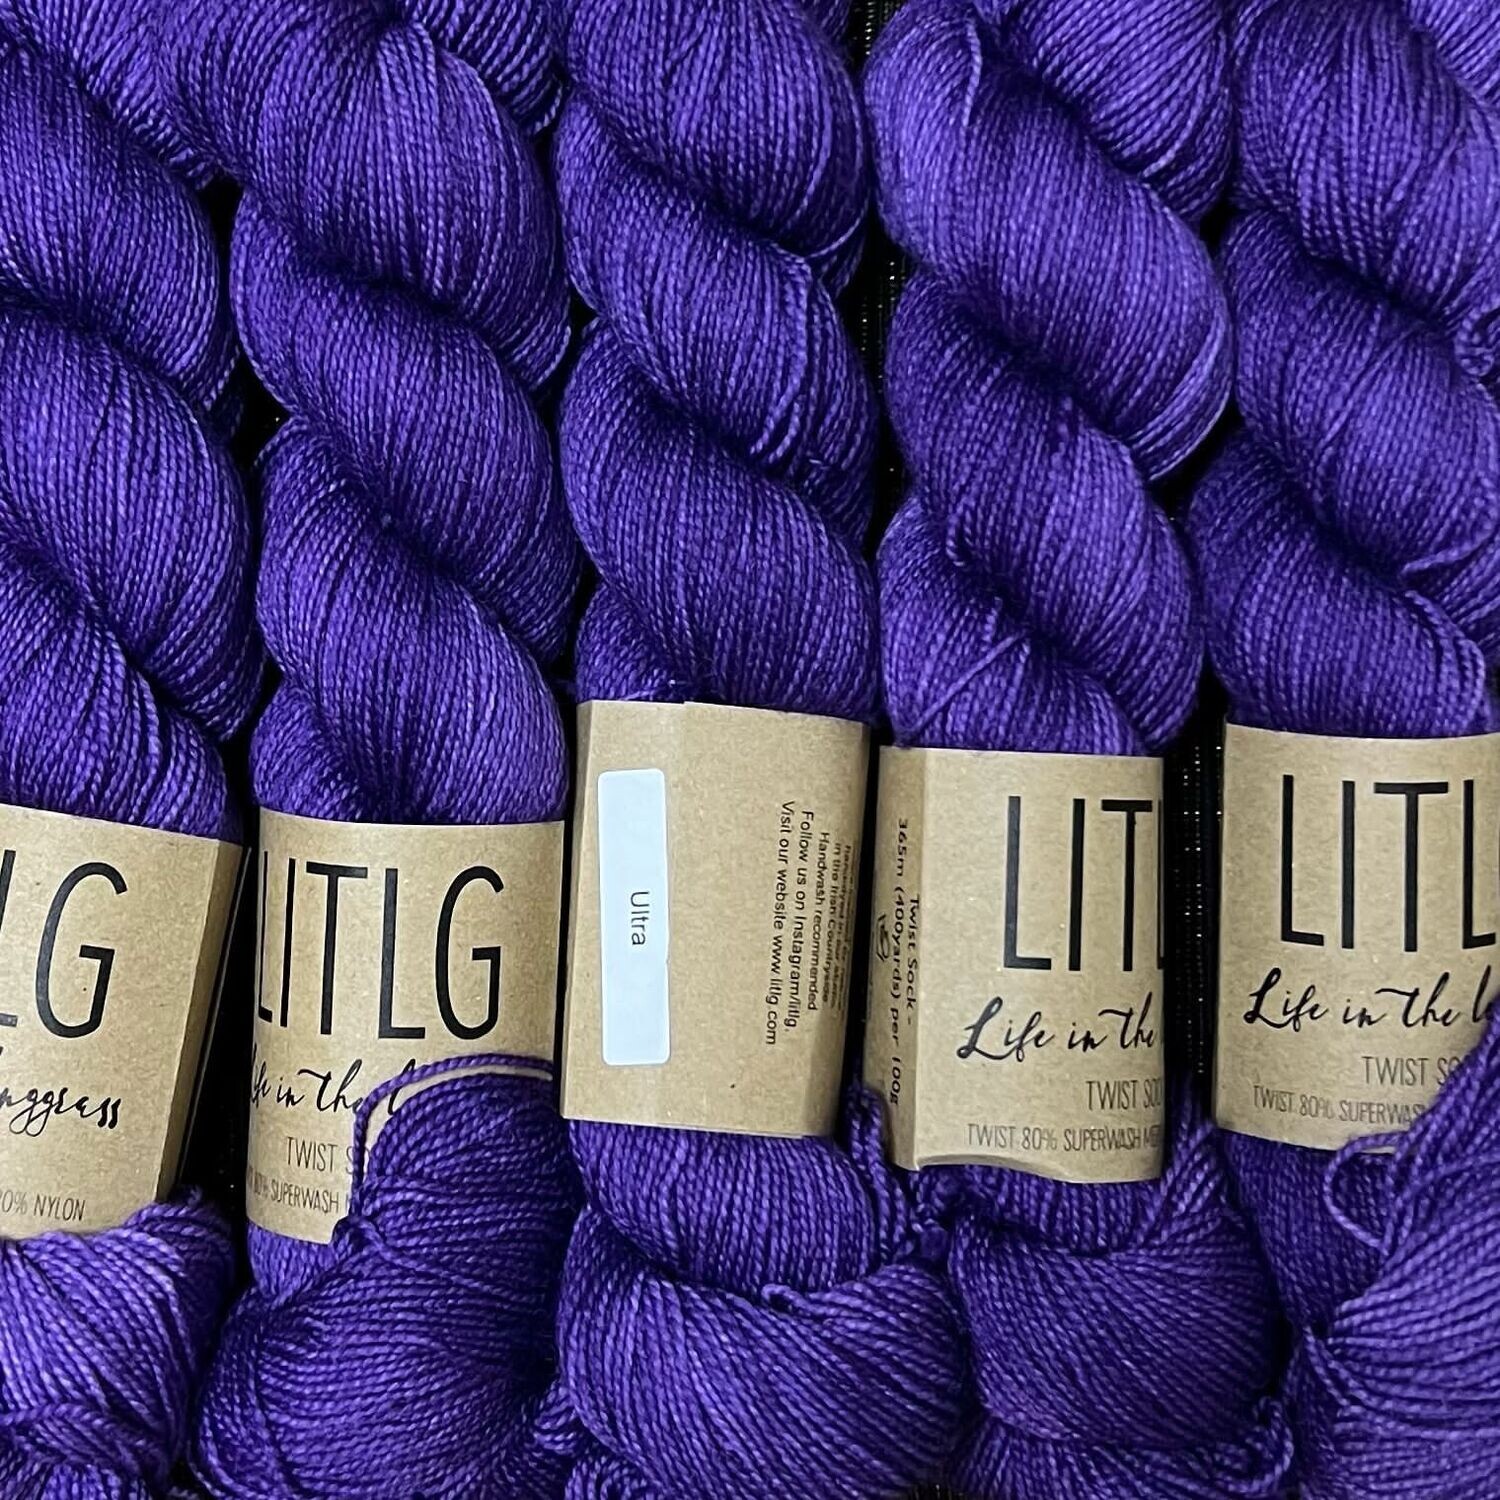 LITLG twist sock yarn Ultra